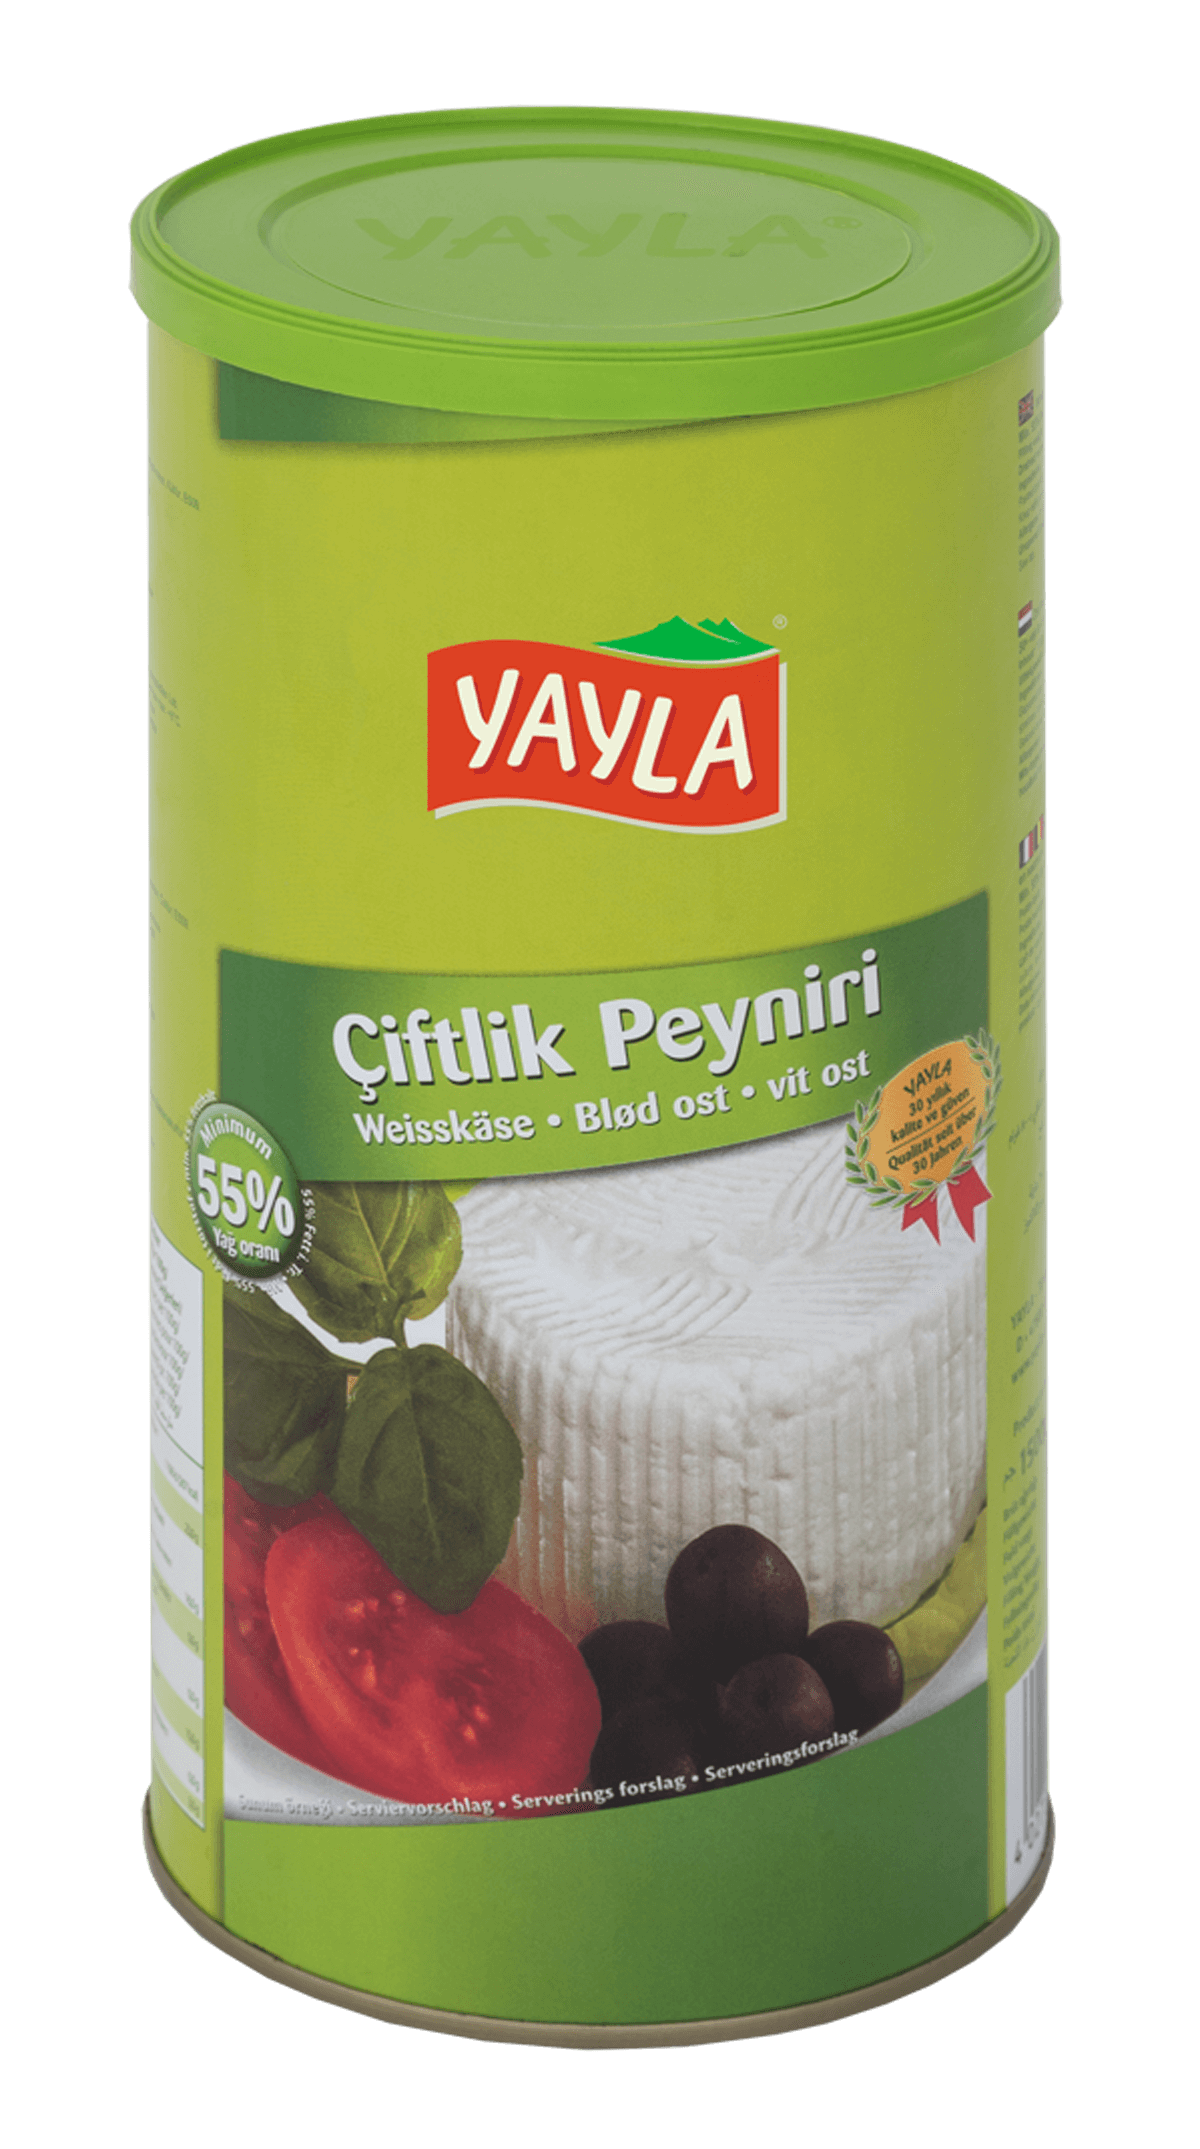 Yayla Ciftlik Peynir / Weißkäse 55% 1500g